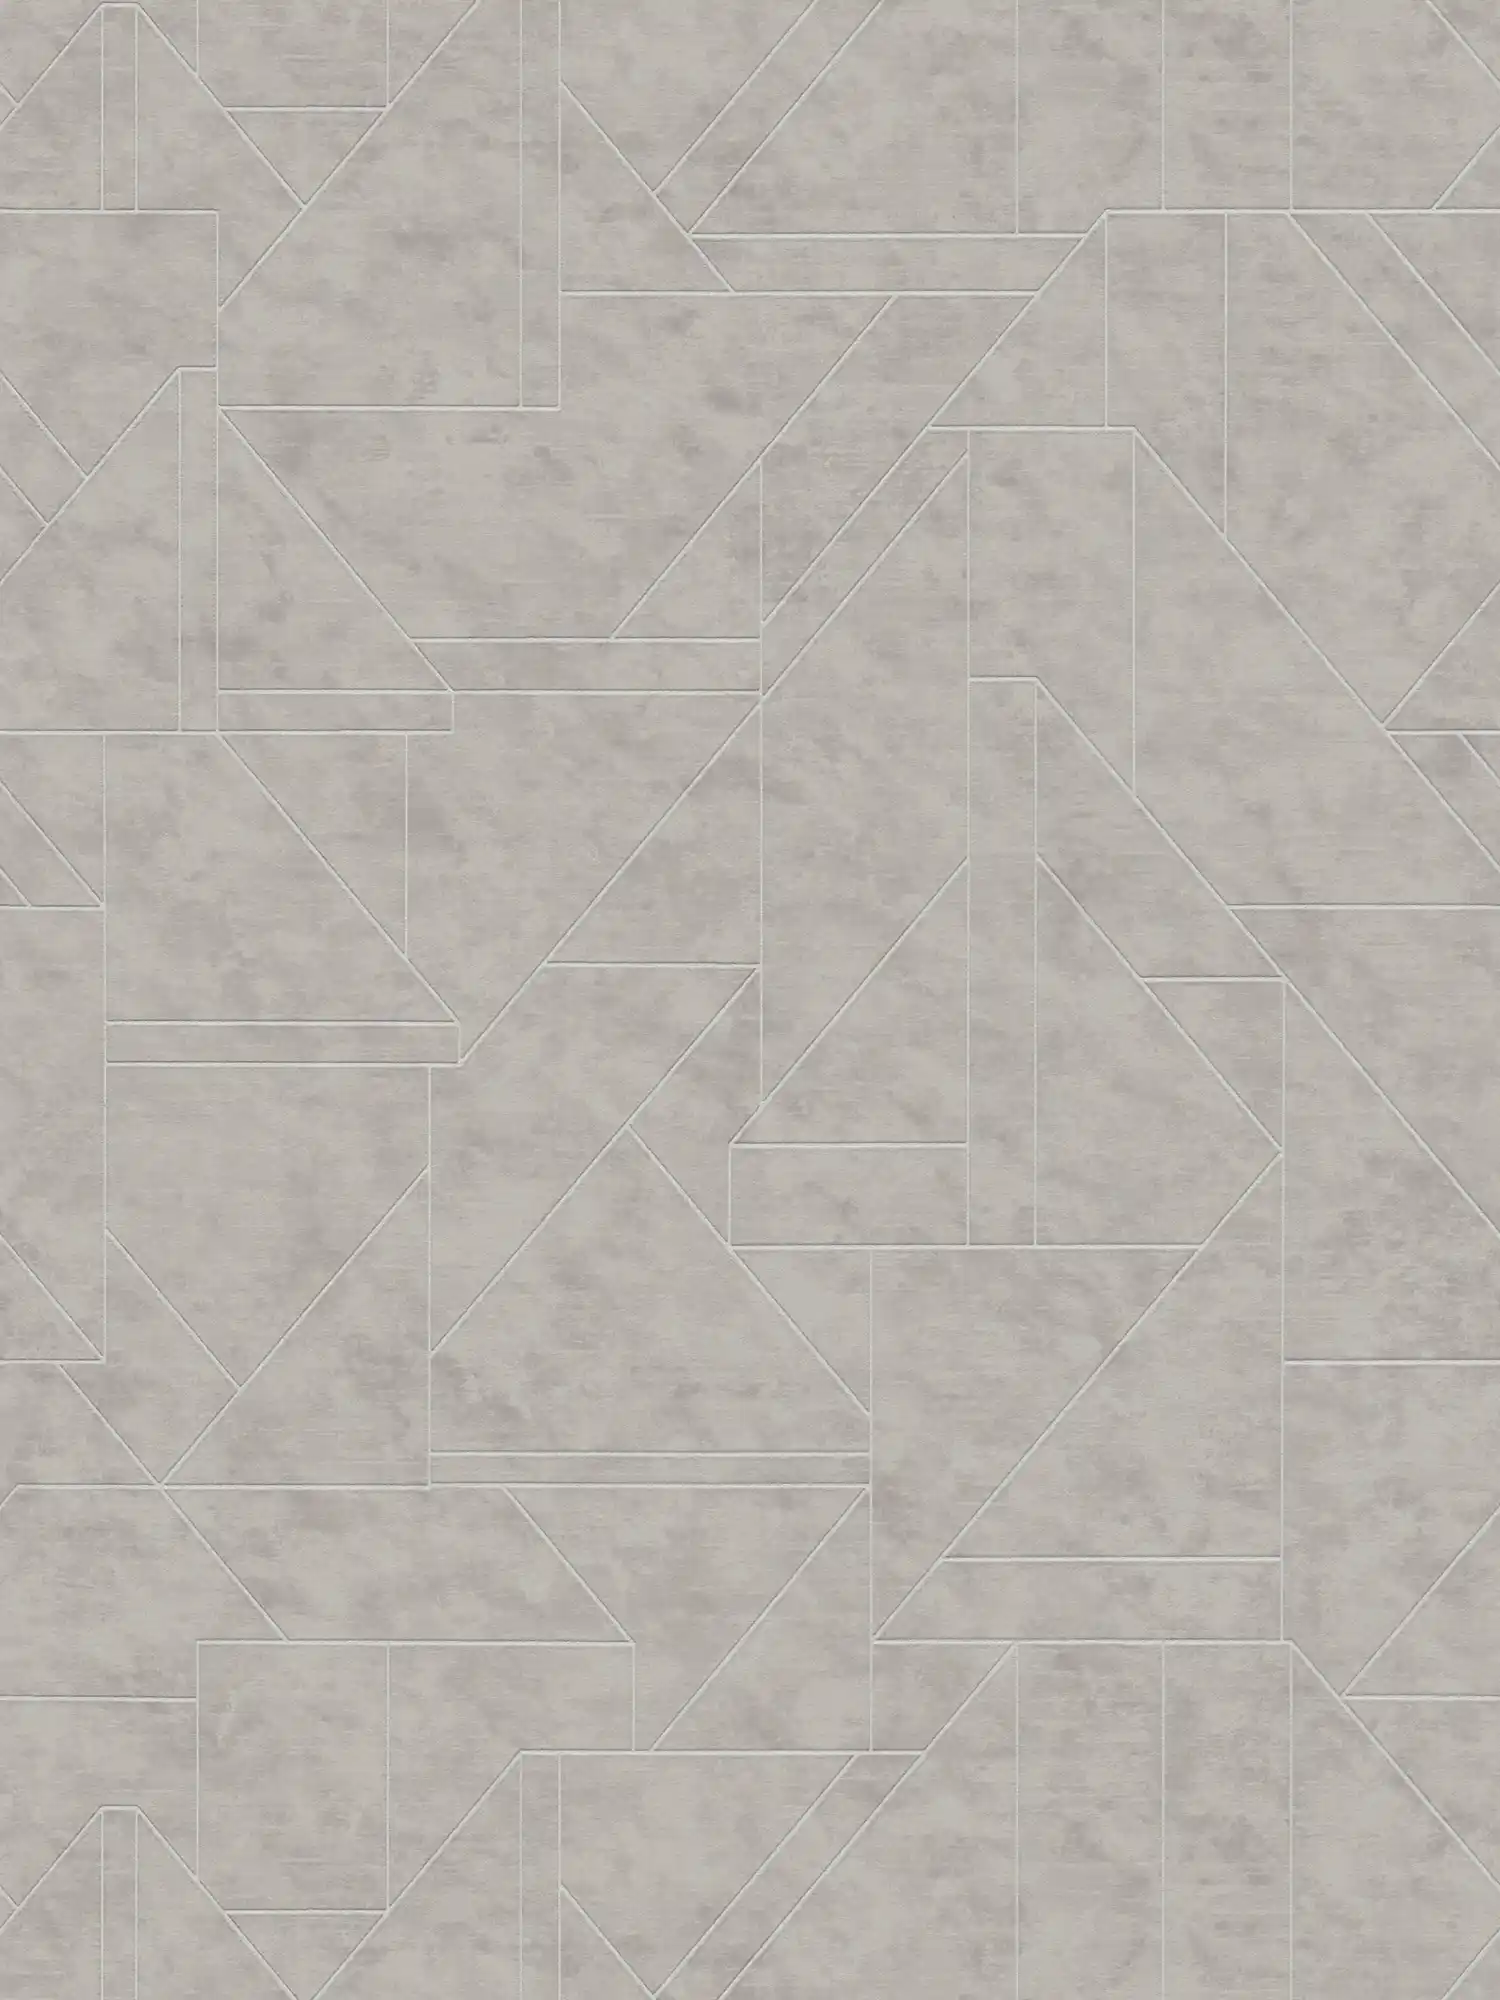 Grafische Vliestapete mit Linienmuster – Grau, Silber
